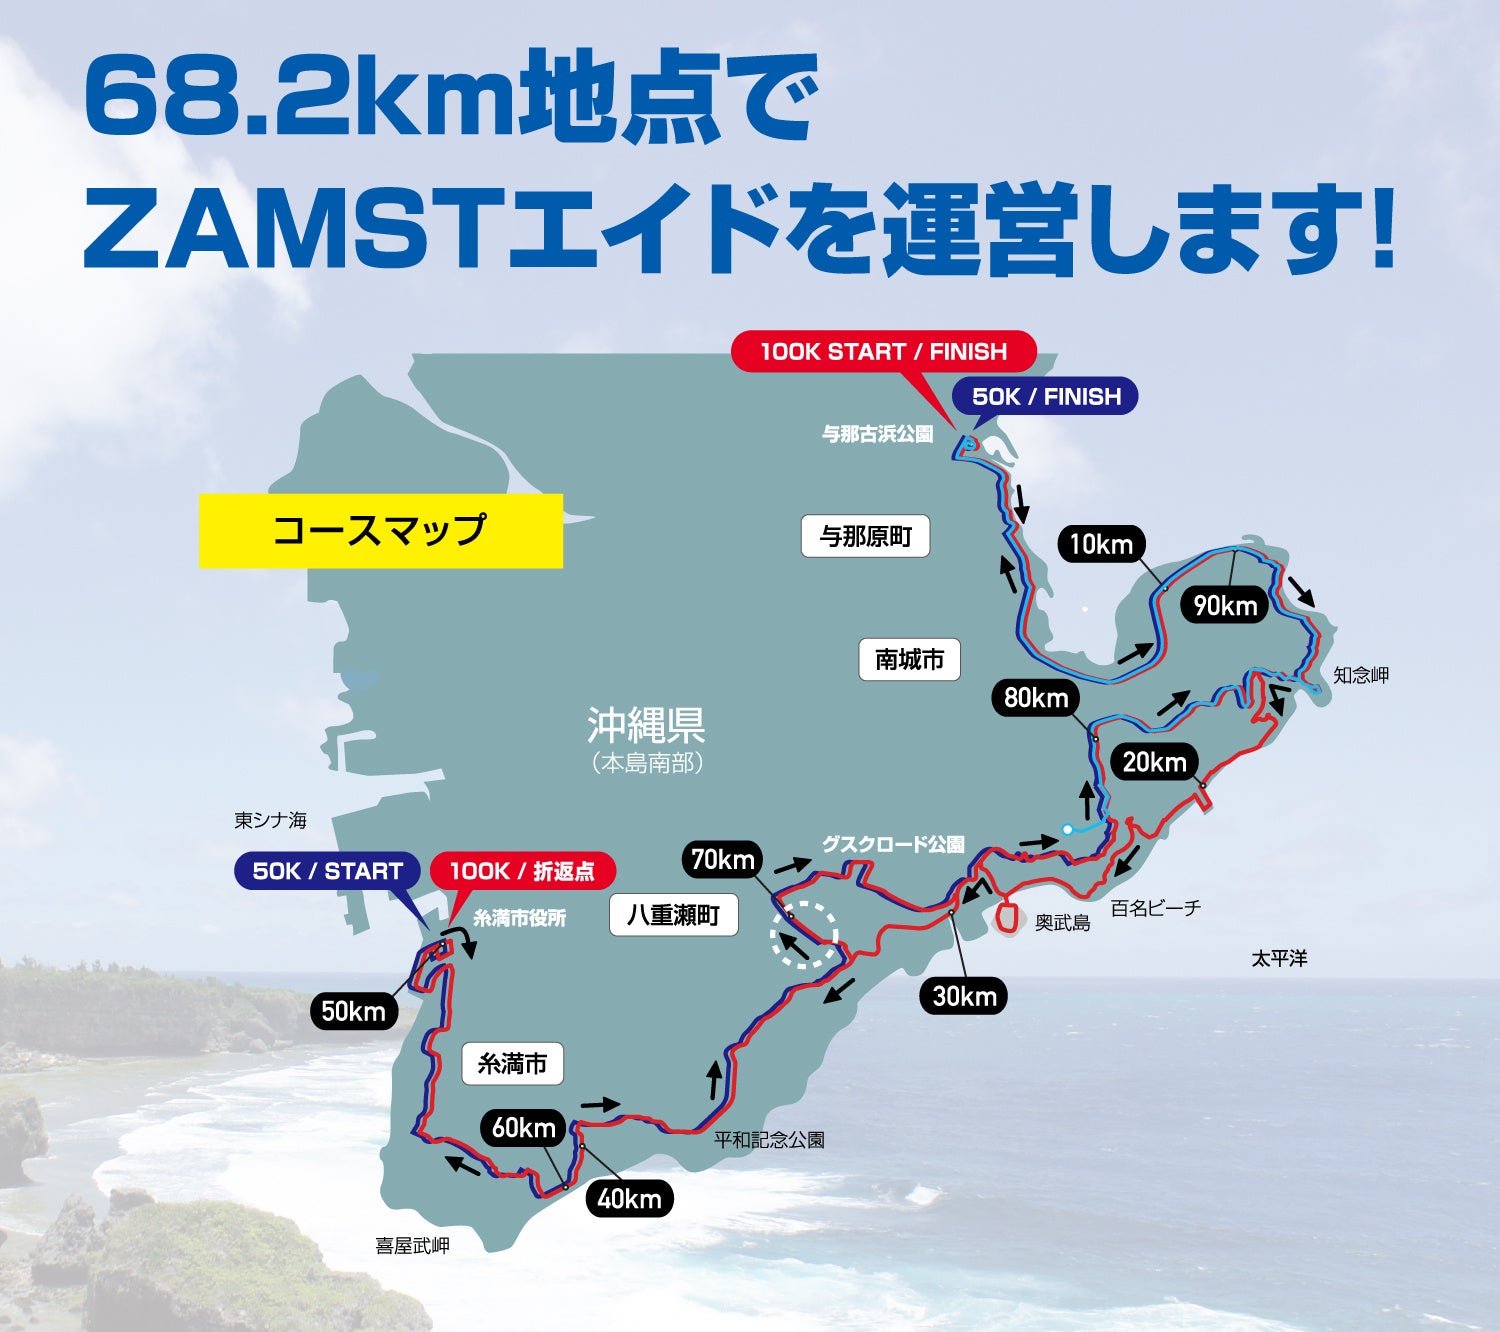 ZAMSTは「第5回沖縄100Kウルトラマラソン」に協賛のサブ画像3_68.2km地点にザムストエイドステーションを設置